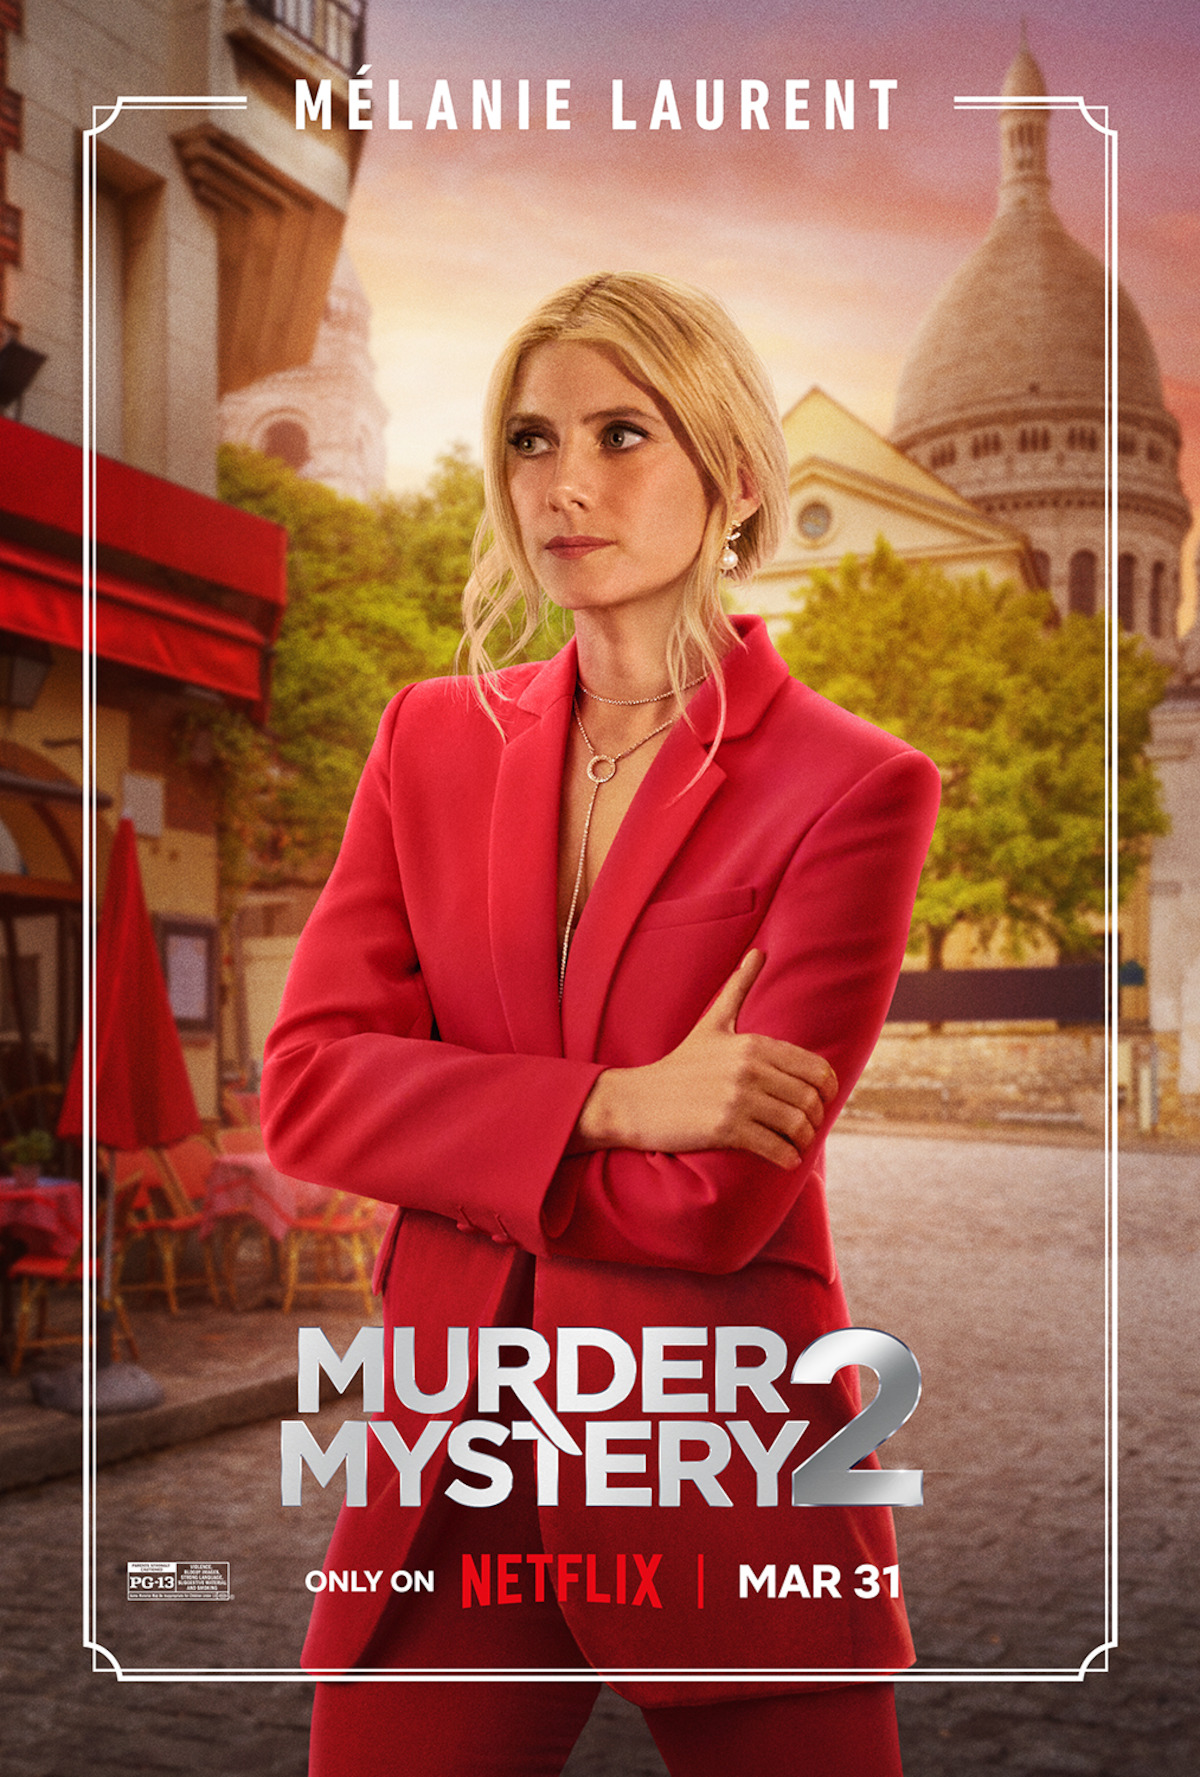 Meet the cast of Murder Mystery 2